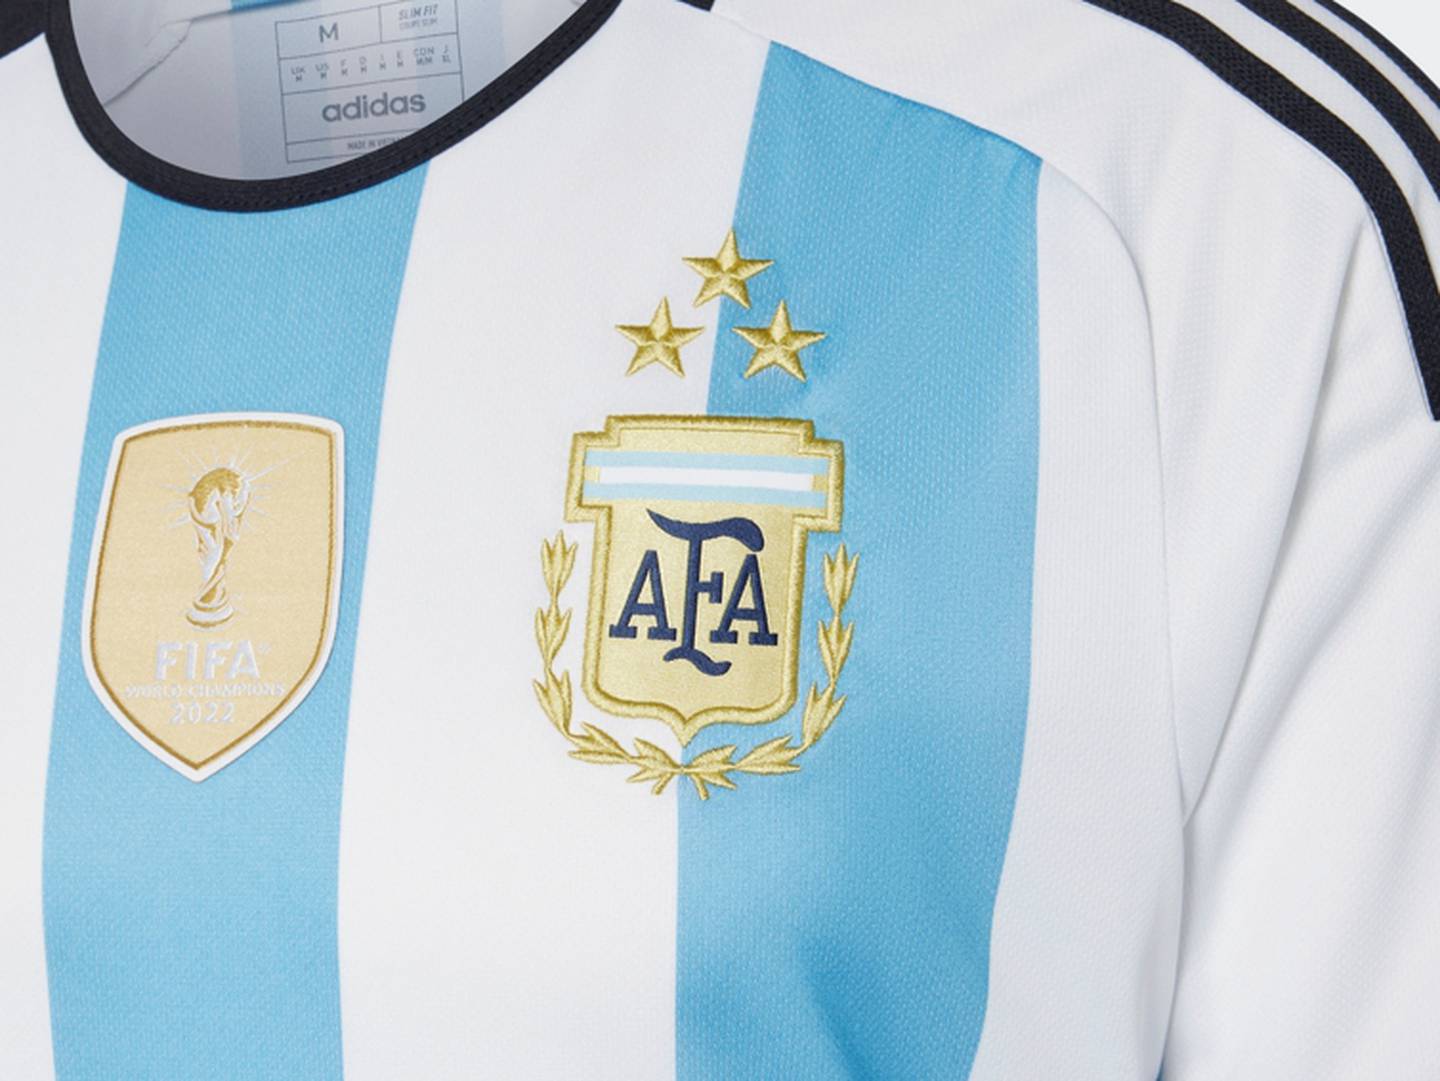 La nueva camiseta tendrá el escudo, las tres estrellas bordadas y, además, contará con la insignia de Campeón del Mundo 2022 de la FIFA.dfd